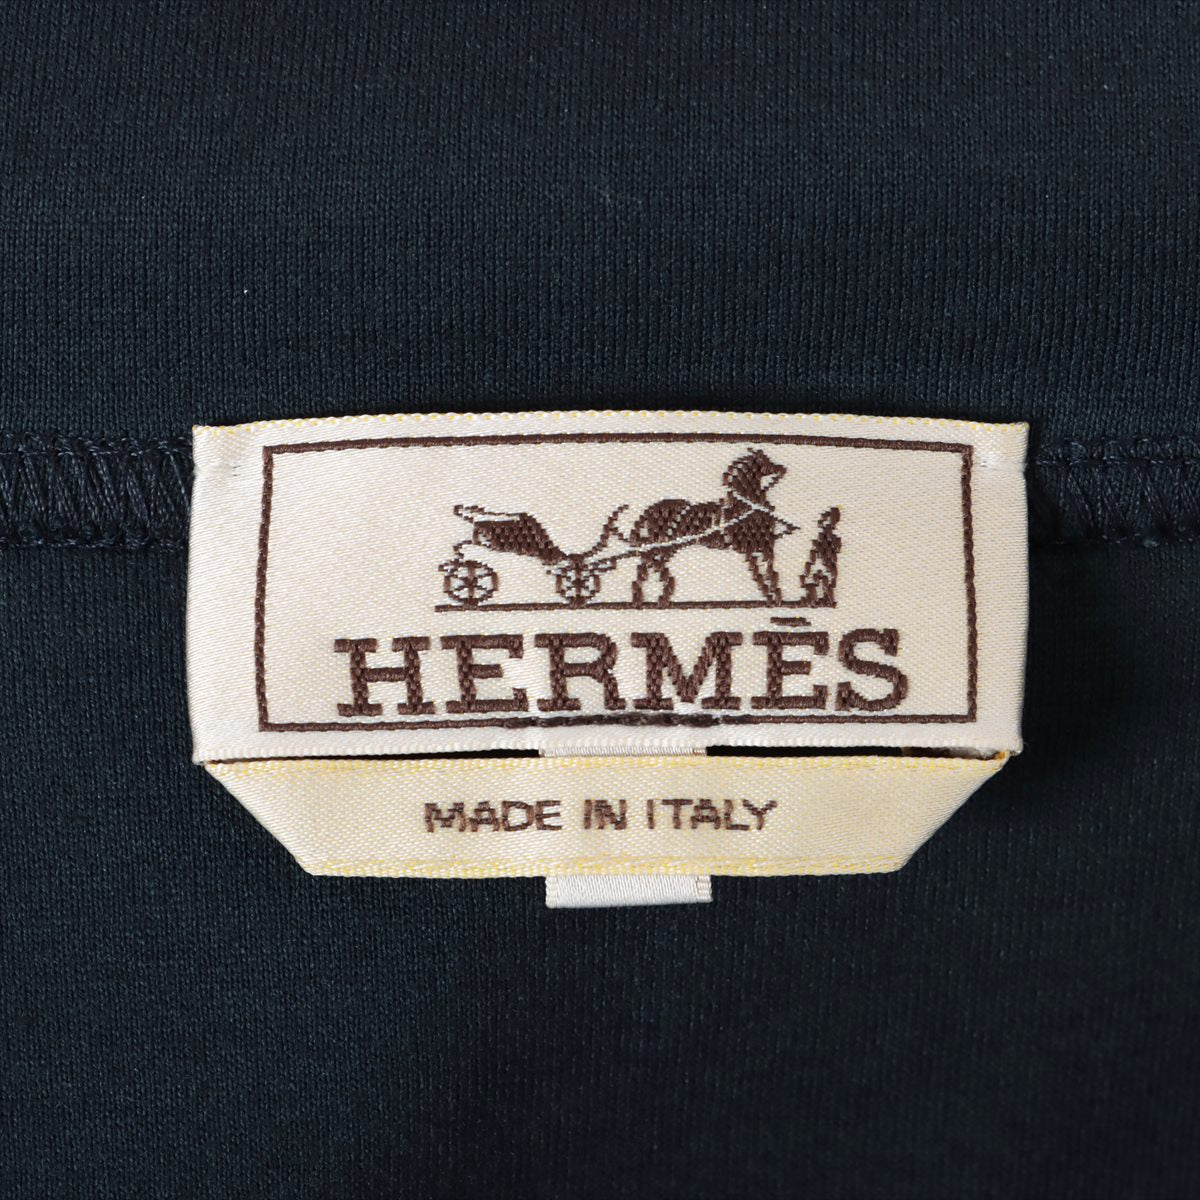 Hermès 21 years Cotton Parker M Men's Navy blue  Zip up Dance of Horses Light